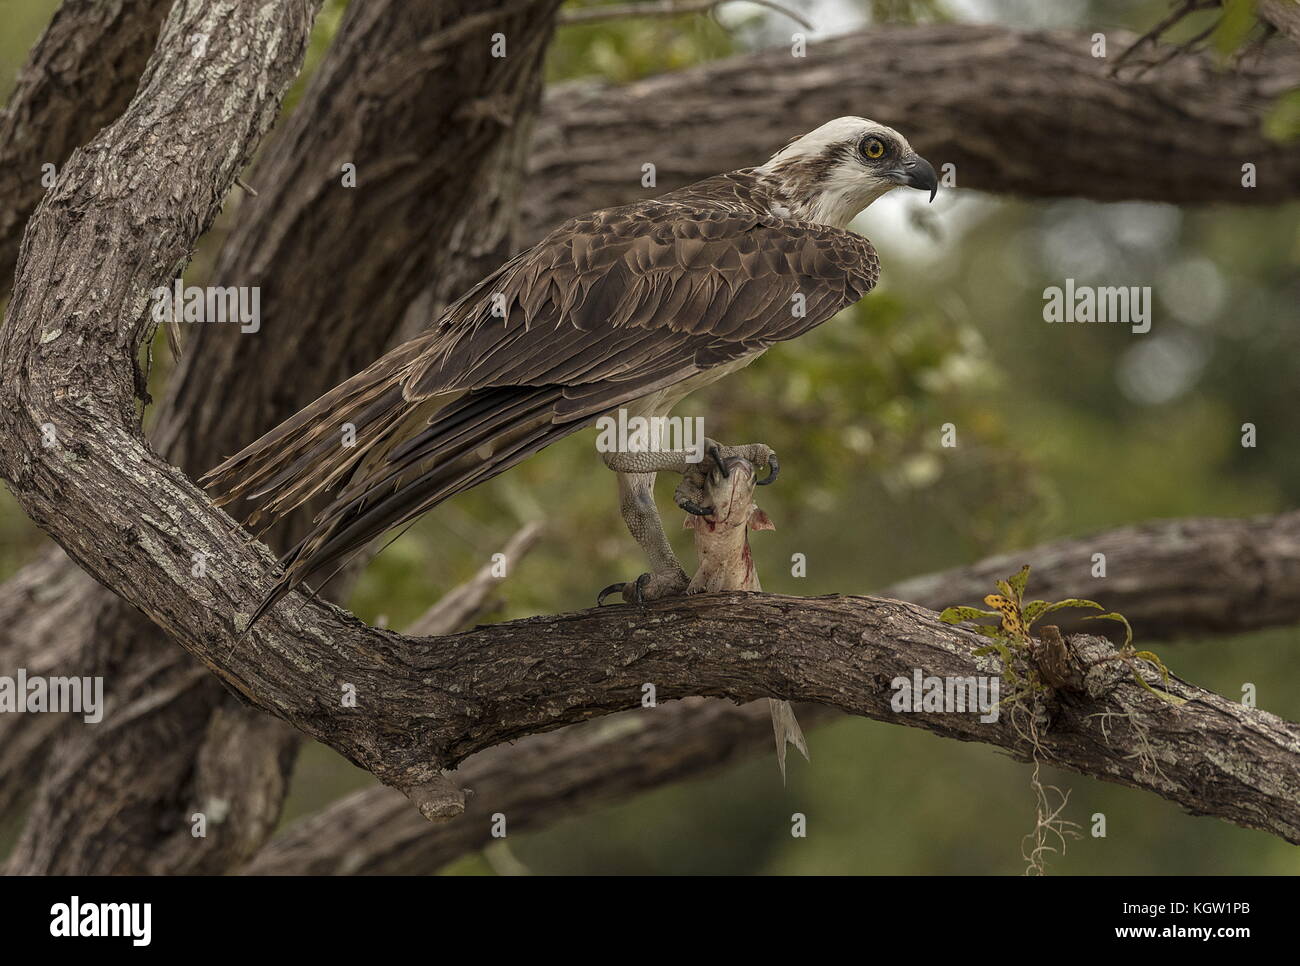 Osprey, Pandion haliaetus, arroccato nella struttura ad albero con pesci preda. Florida. Foto Stock